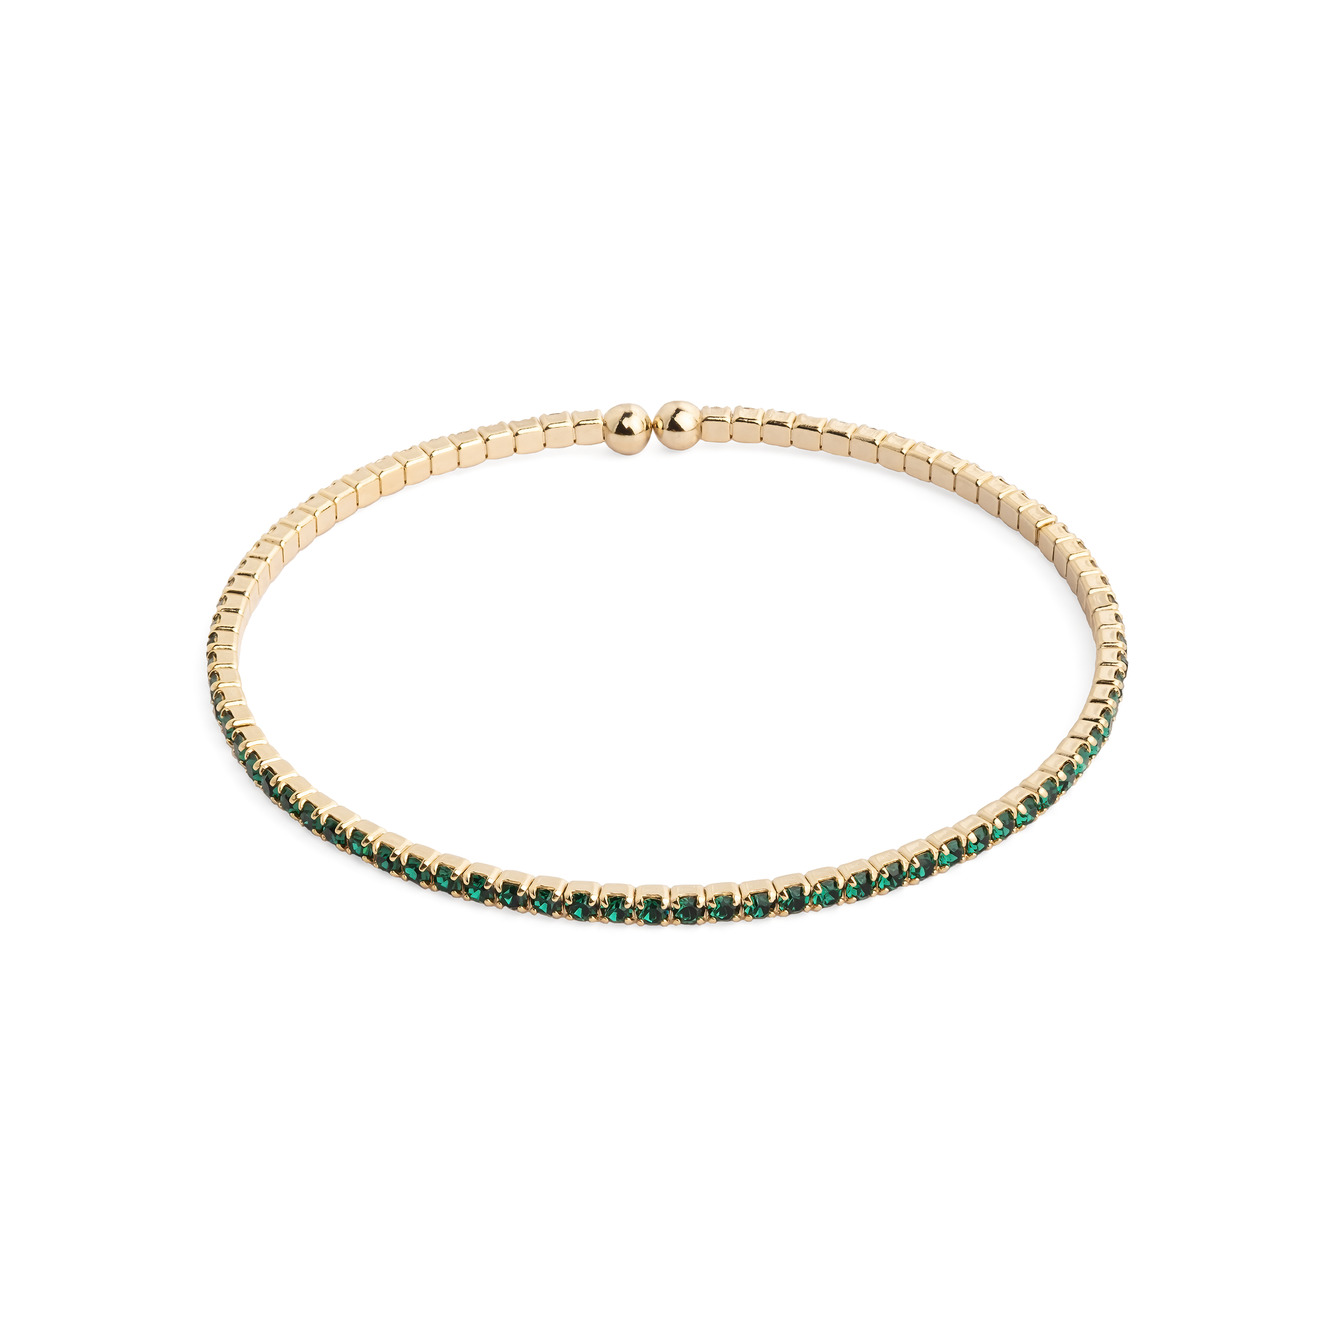 Herald Percy Золотистый браслет с зелеными кристаллами herald percy золотистый браслет с зелеными кристаллами